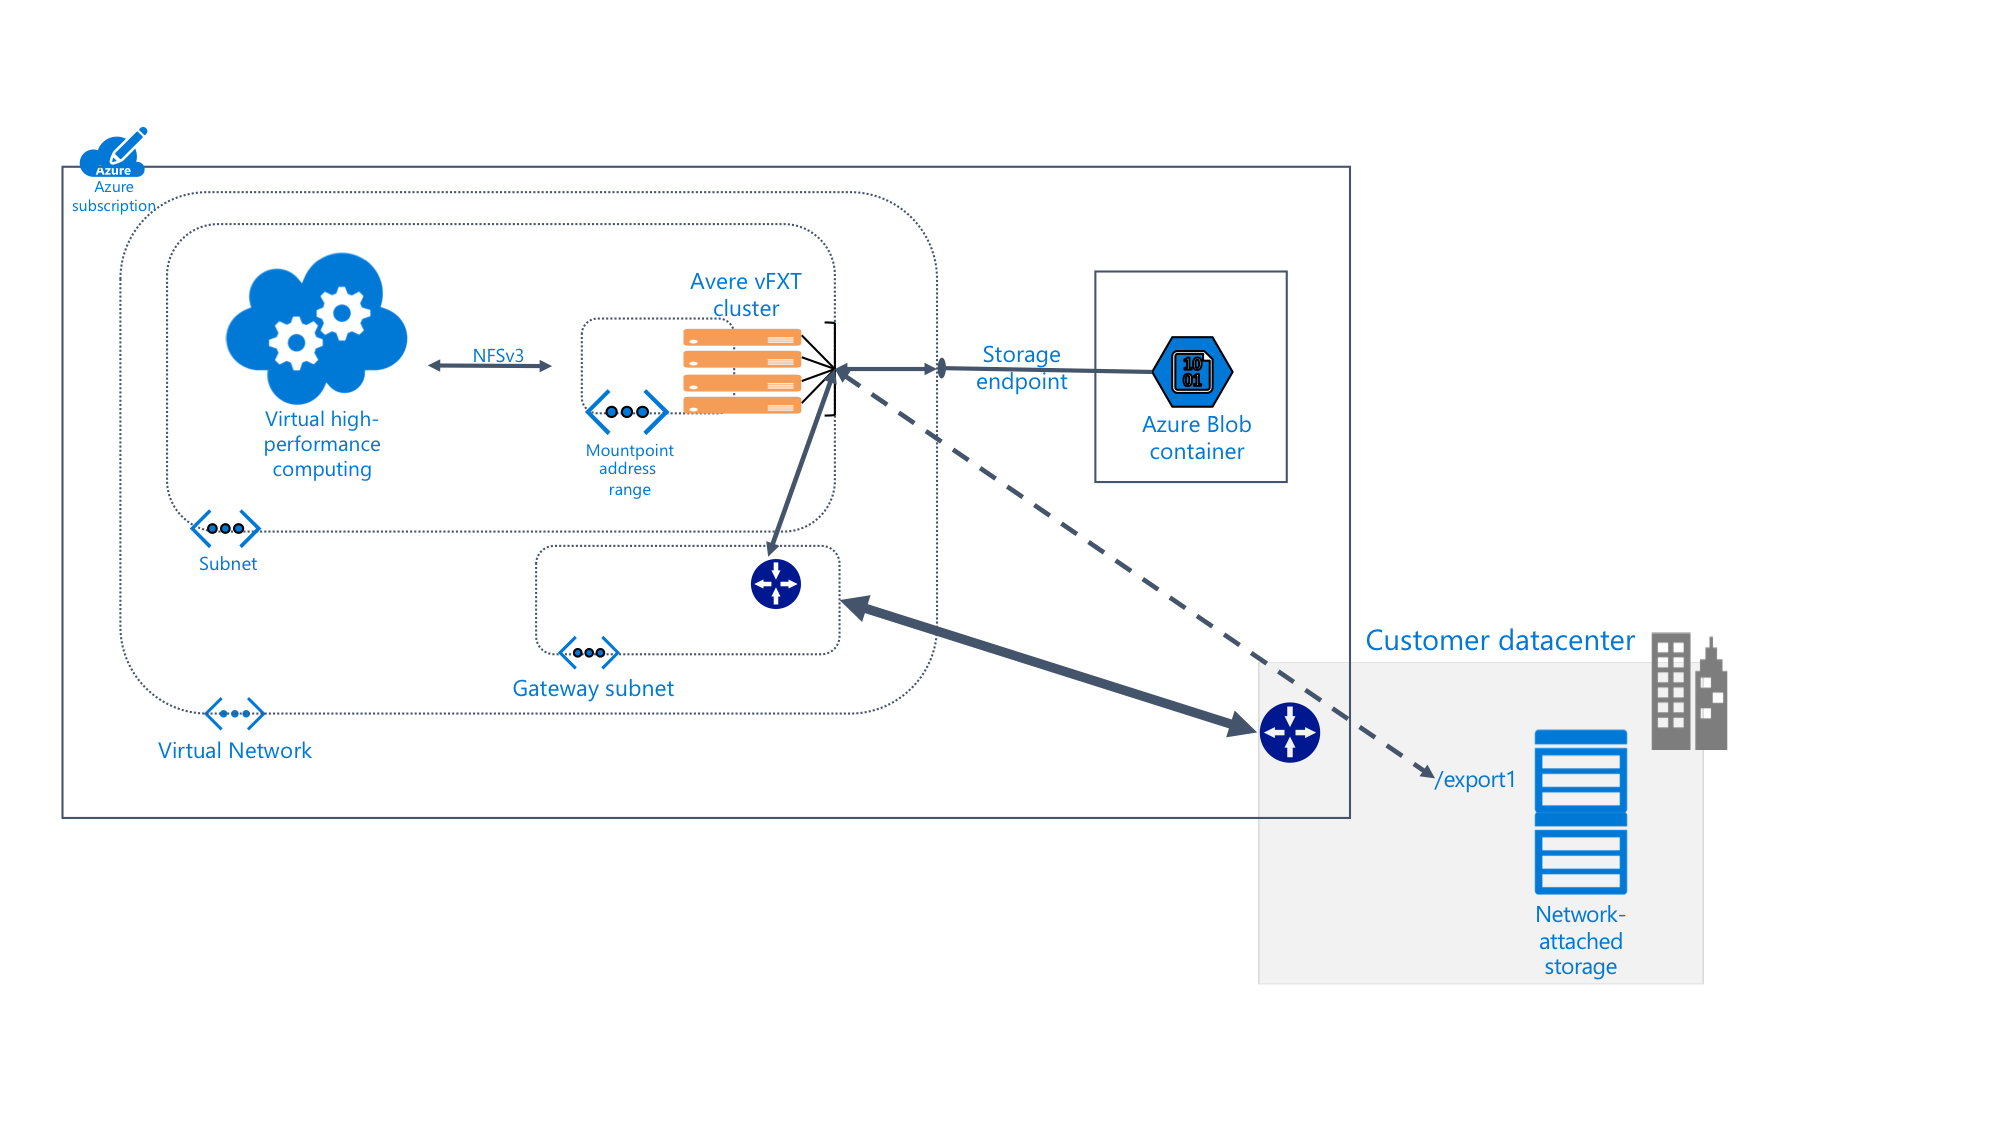 Blob Storage とオンプレミスのデータセンターに接続された Azure サブスクリプション内の Avere vFXT システムの詳細を示す図